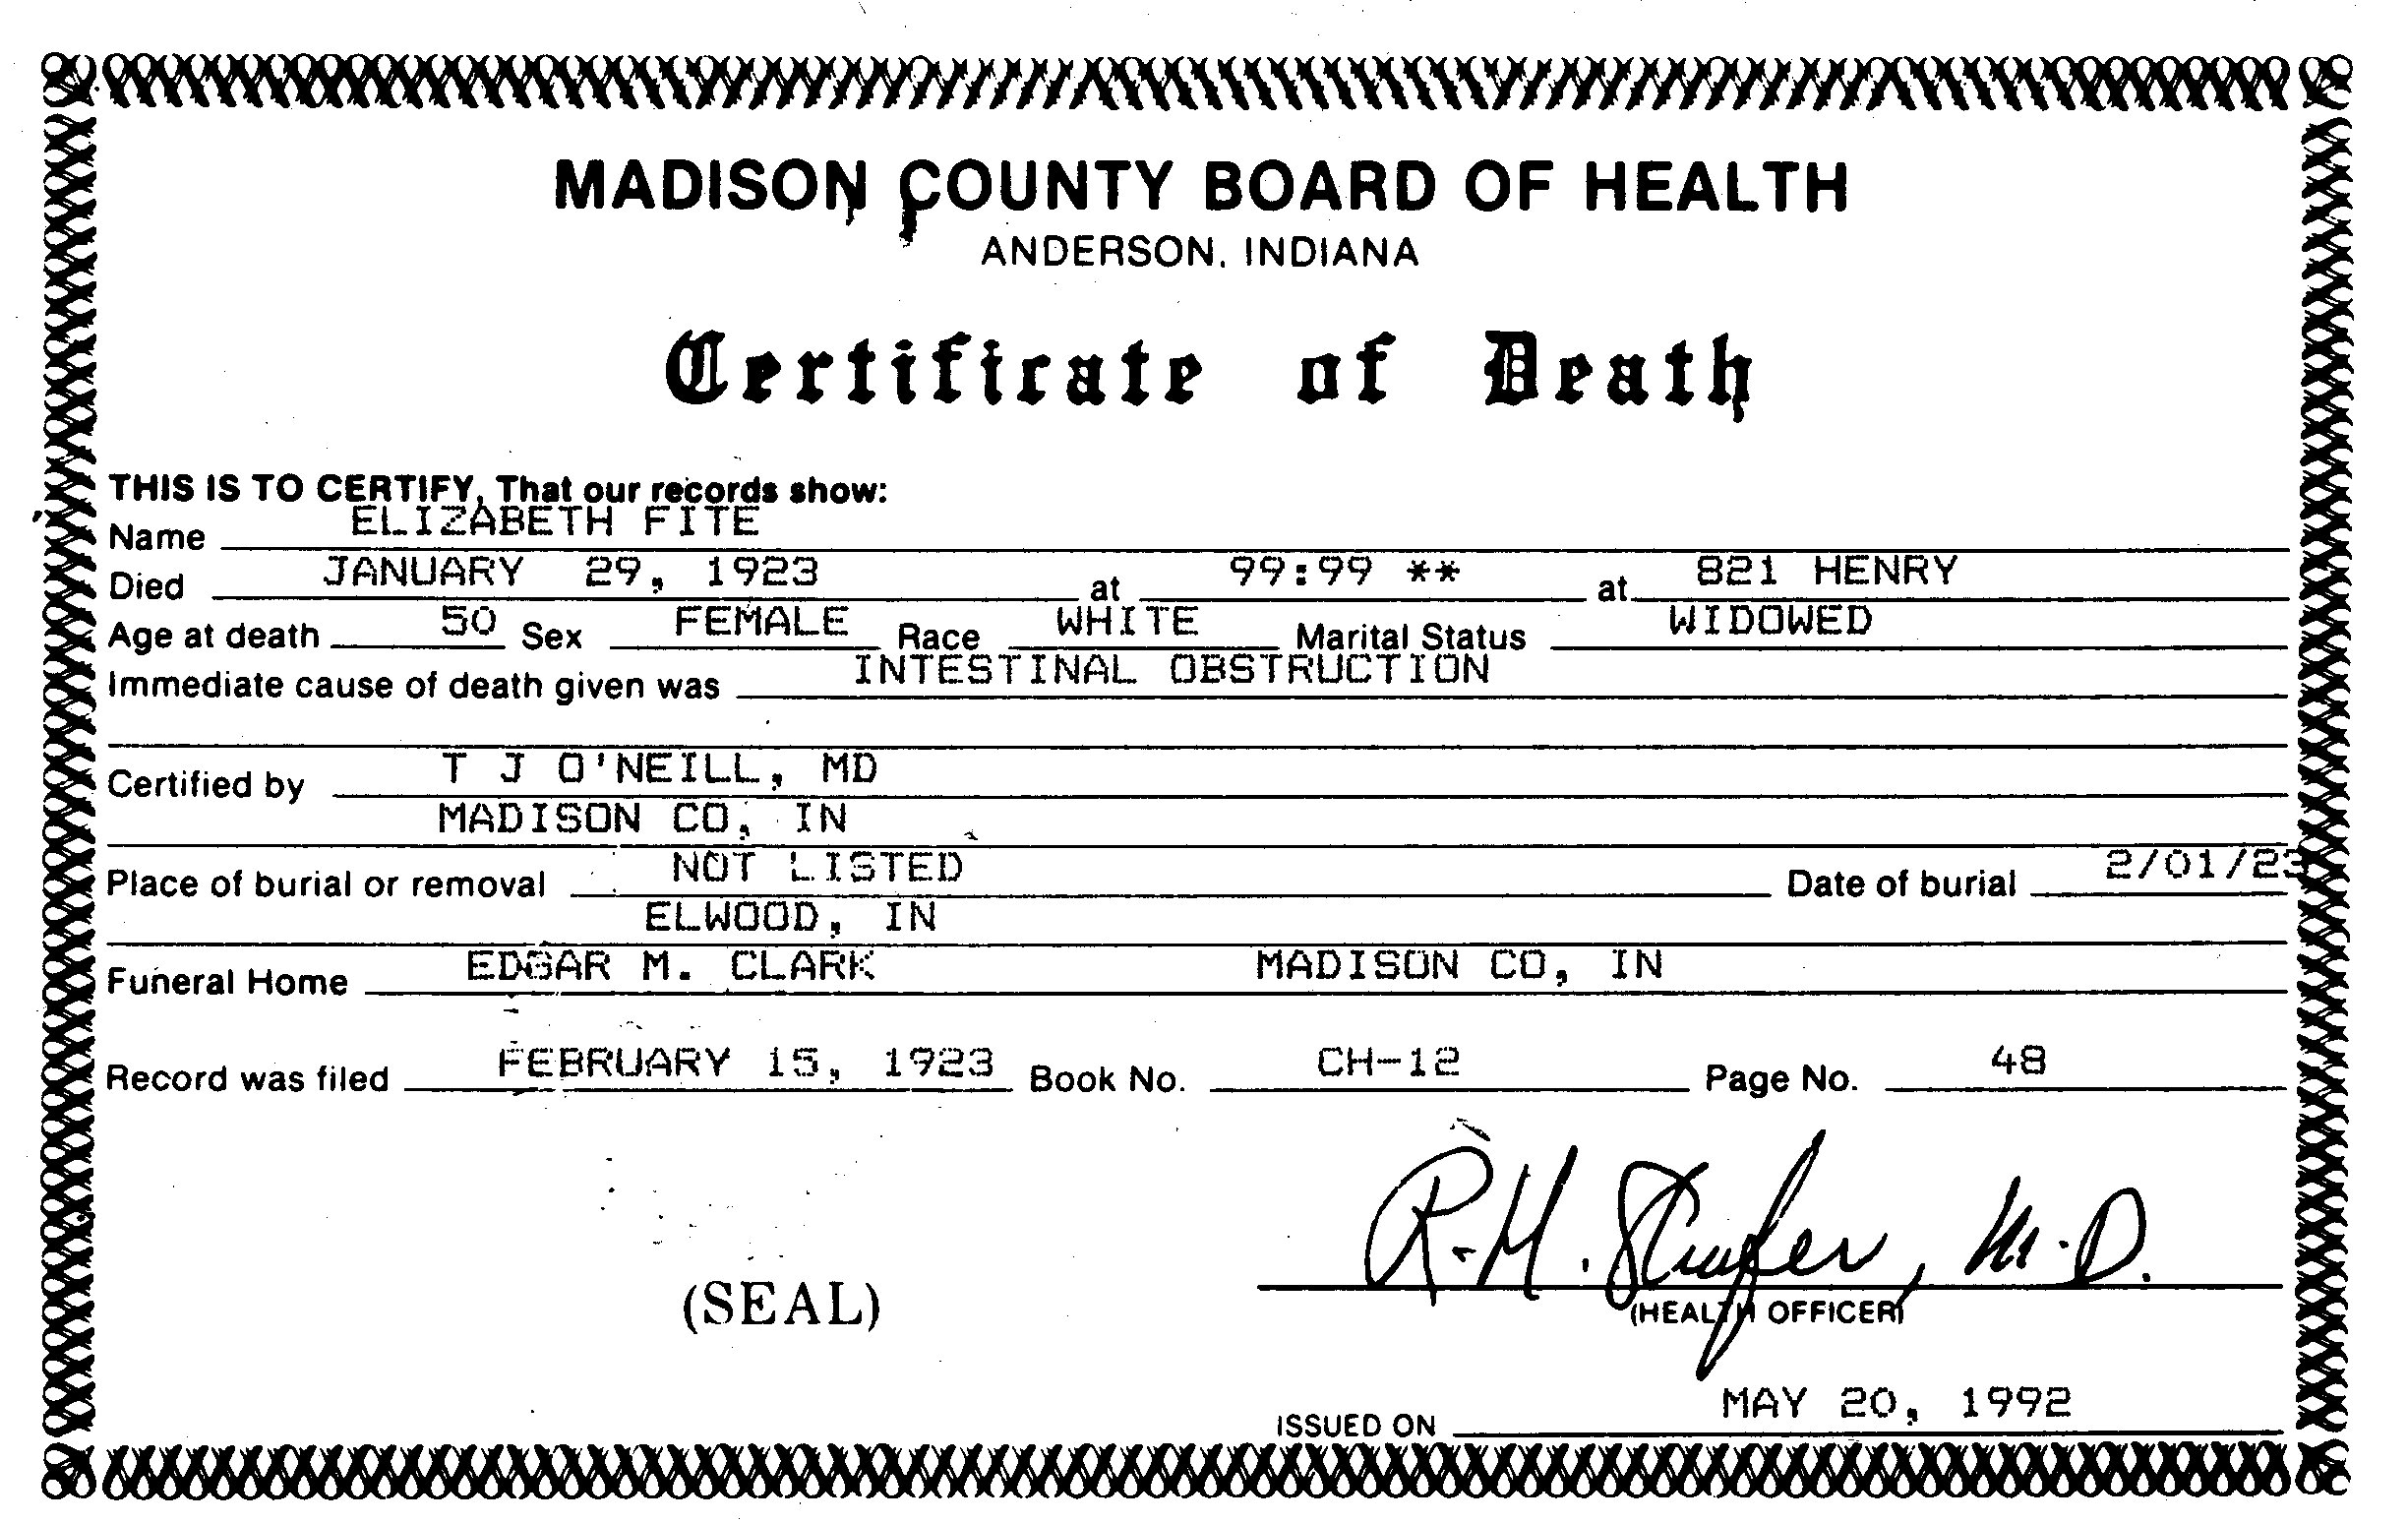 Elizabeth (Rheude) Fite Death Certificate